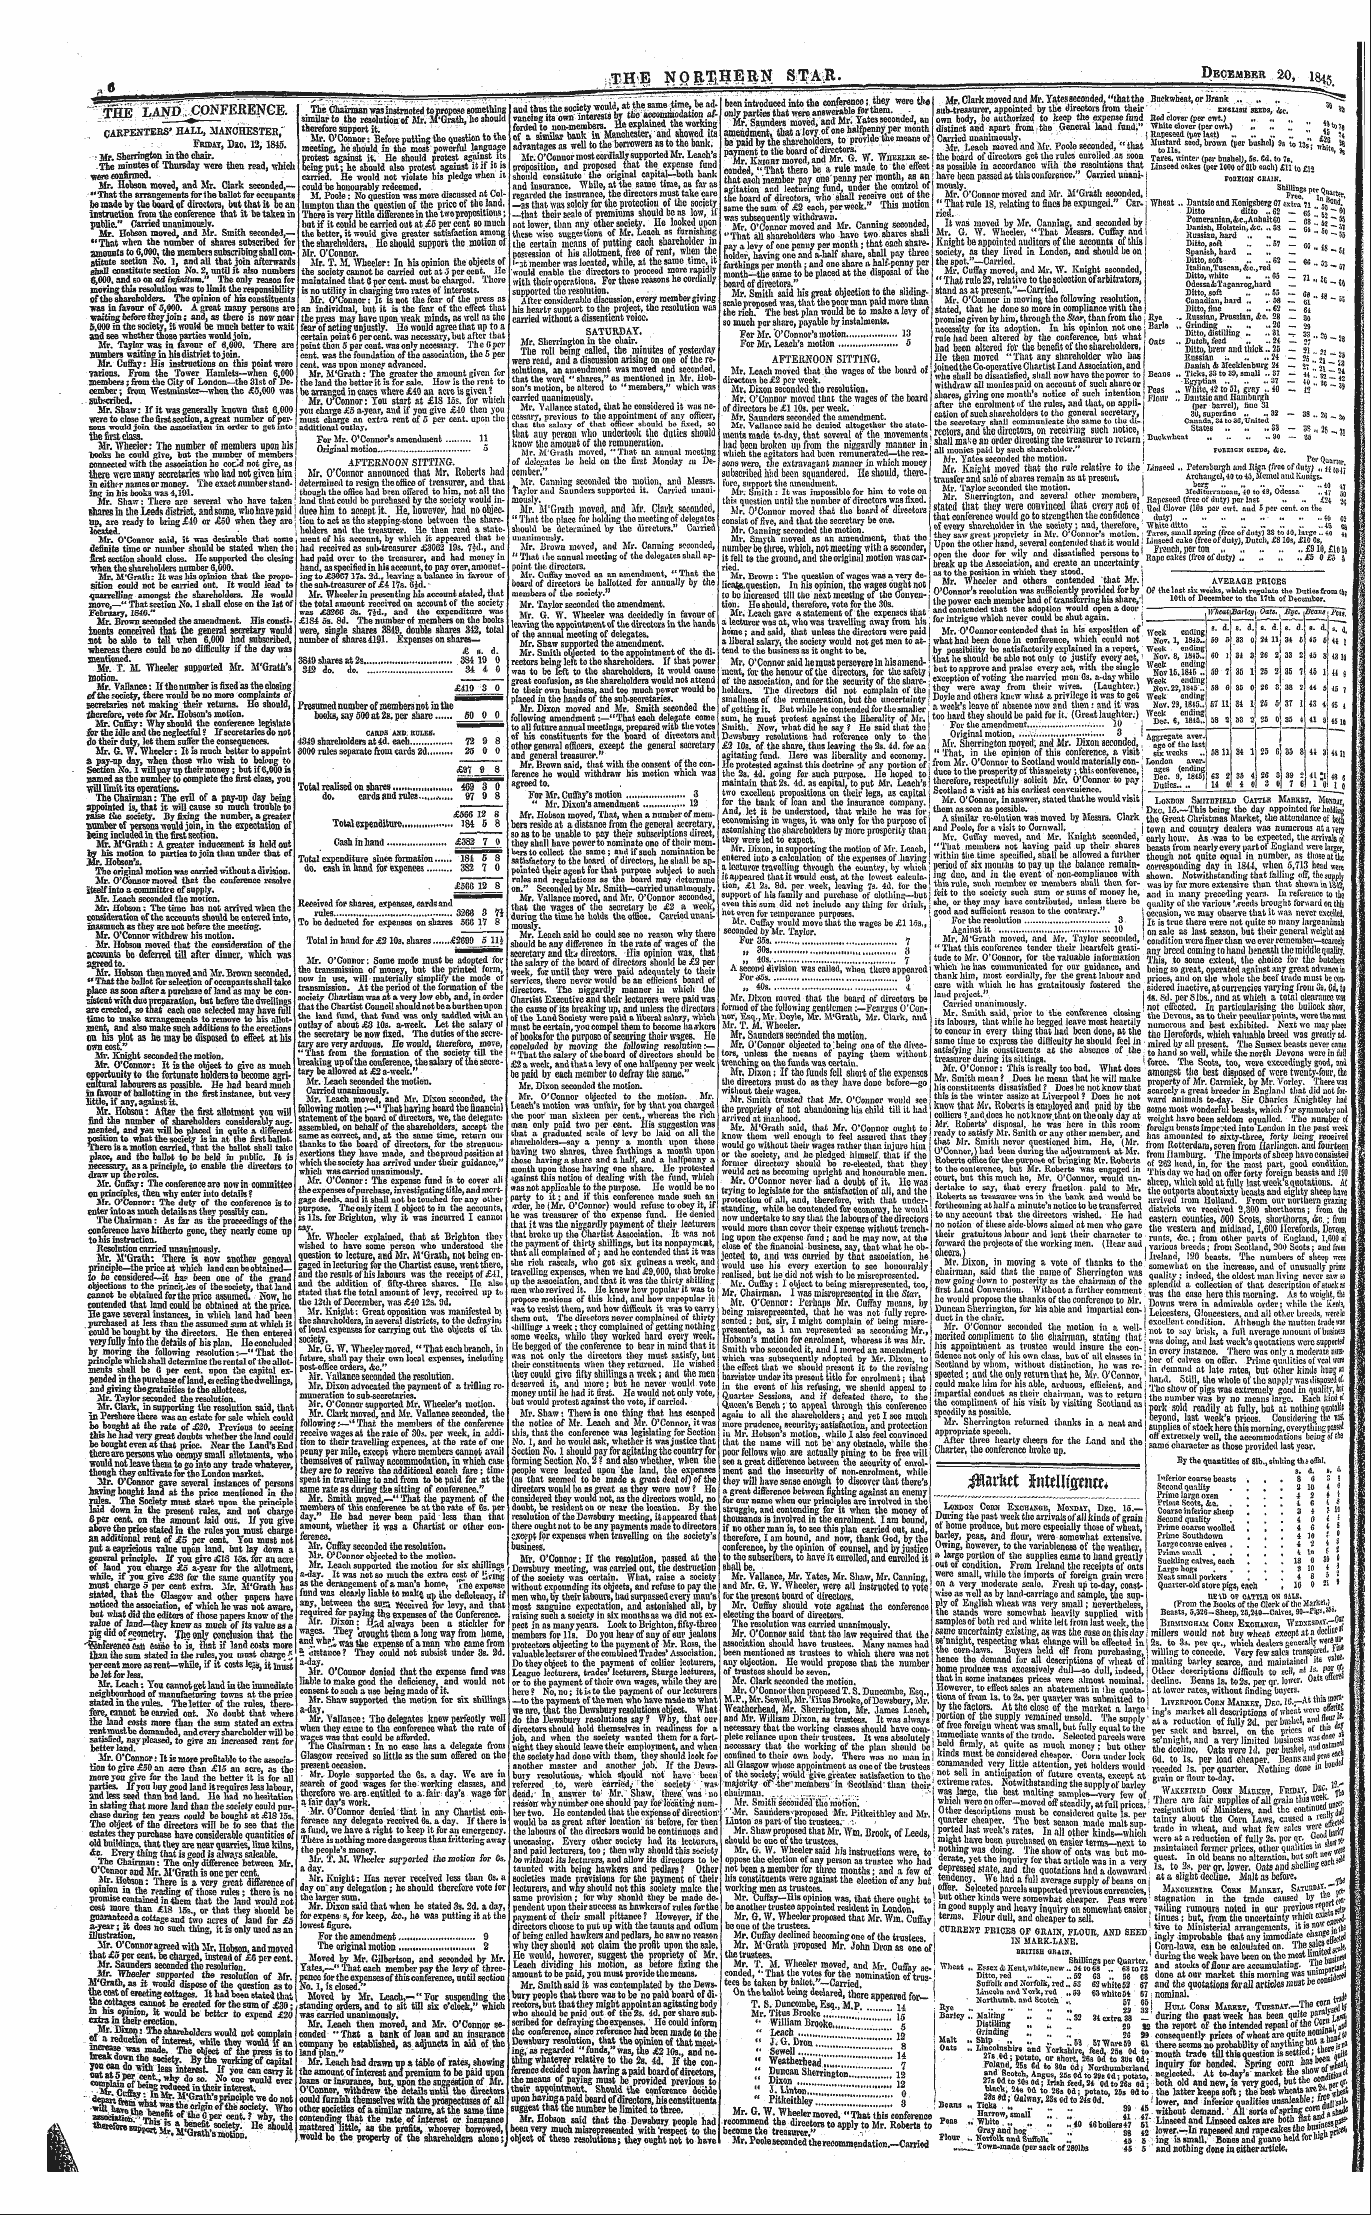 Northern Star (1837-1852): jS F Y, 4th edition - Mxm Mmliwmu